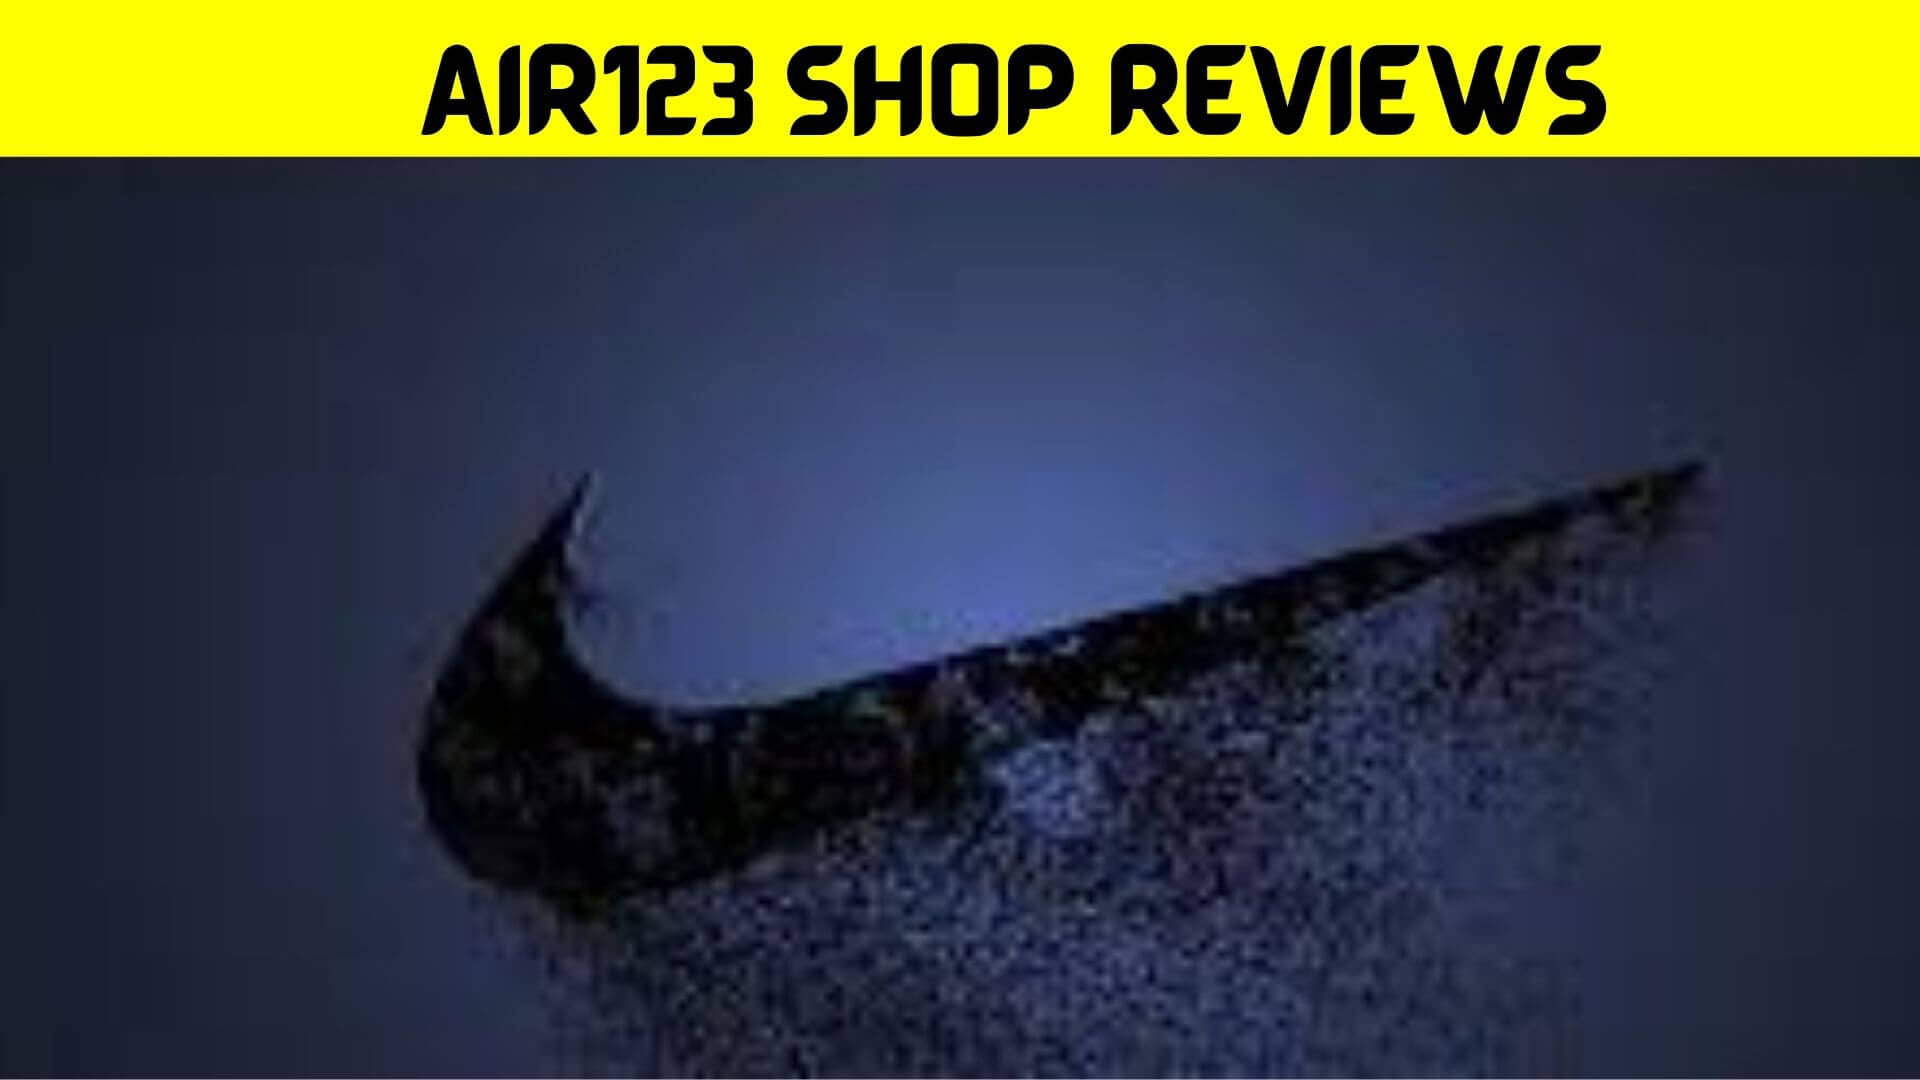 Air123 Shop Reviews